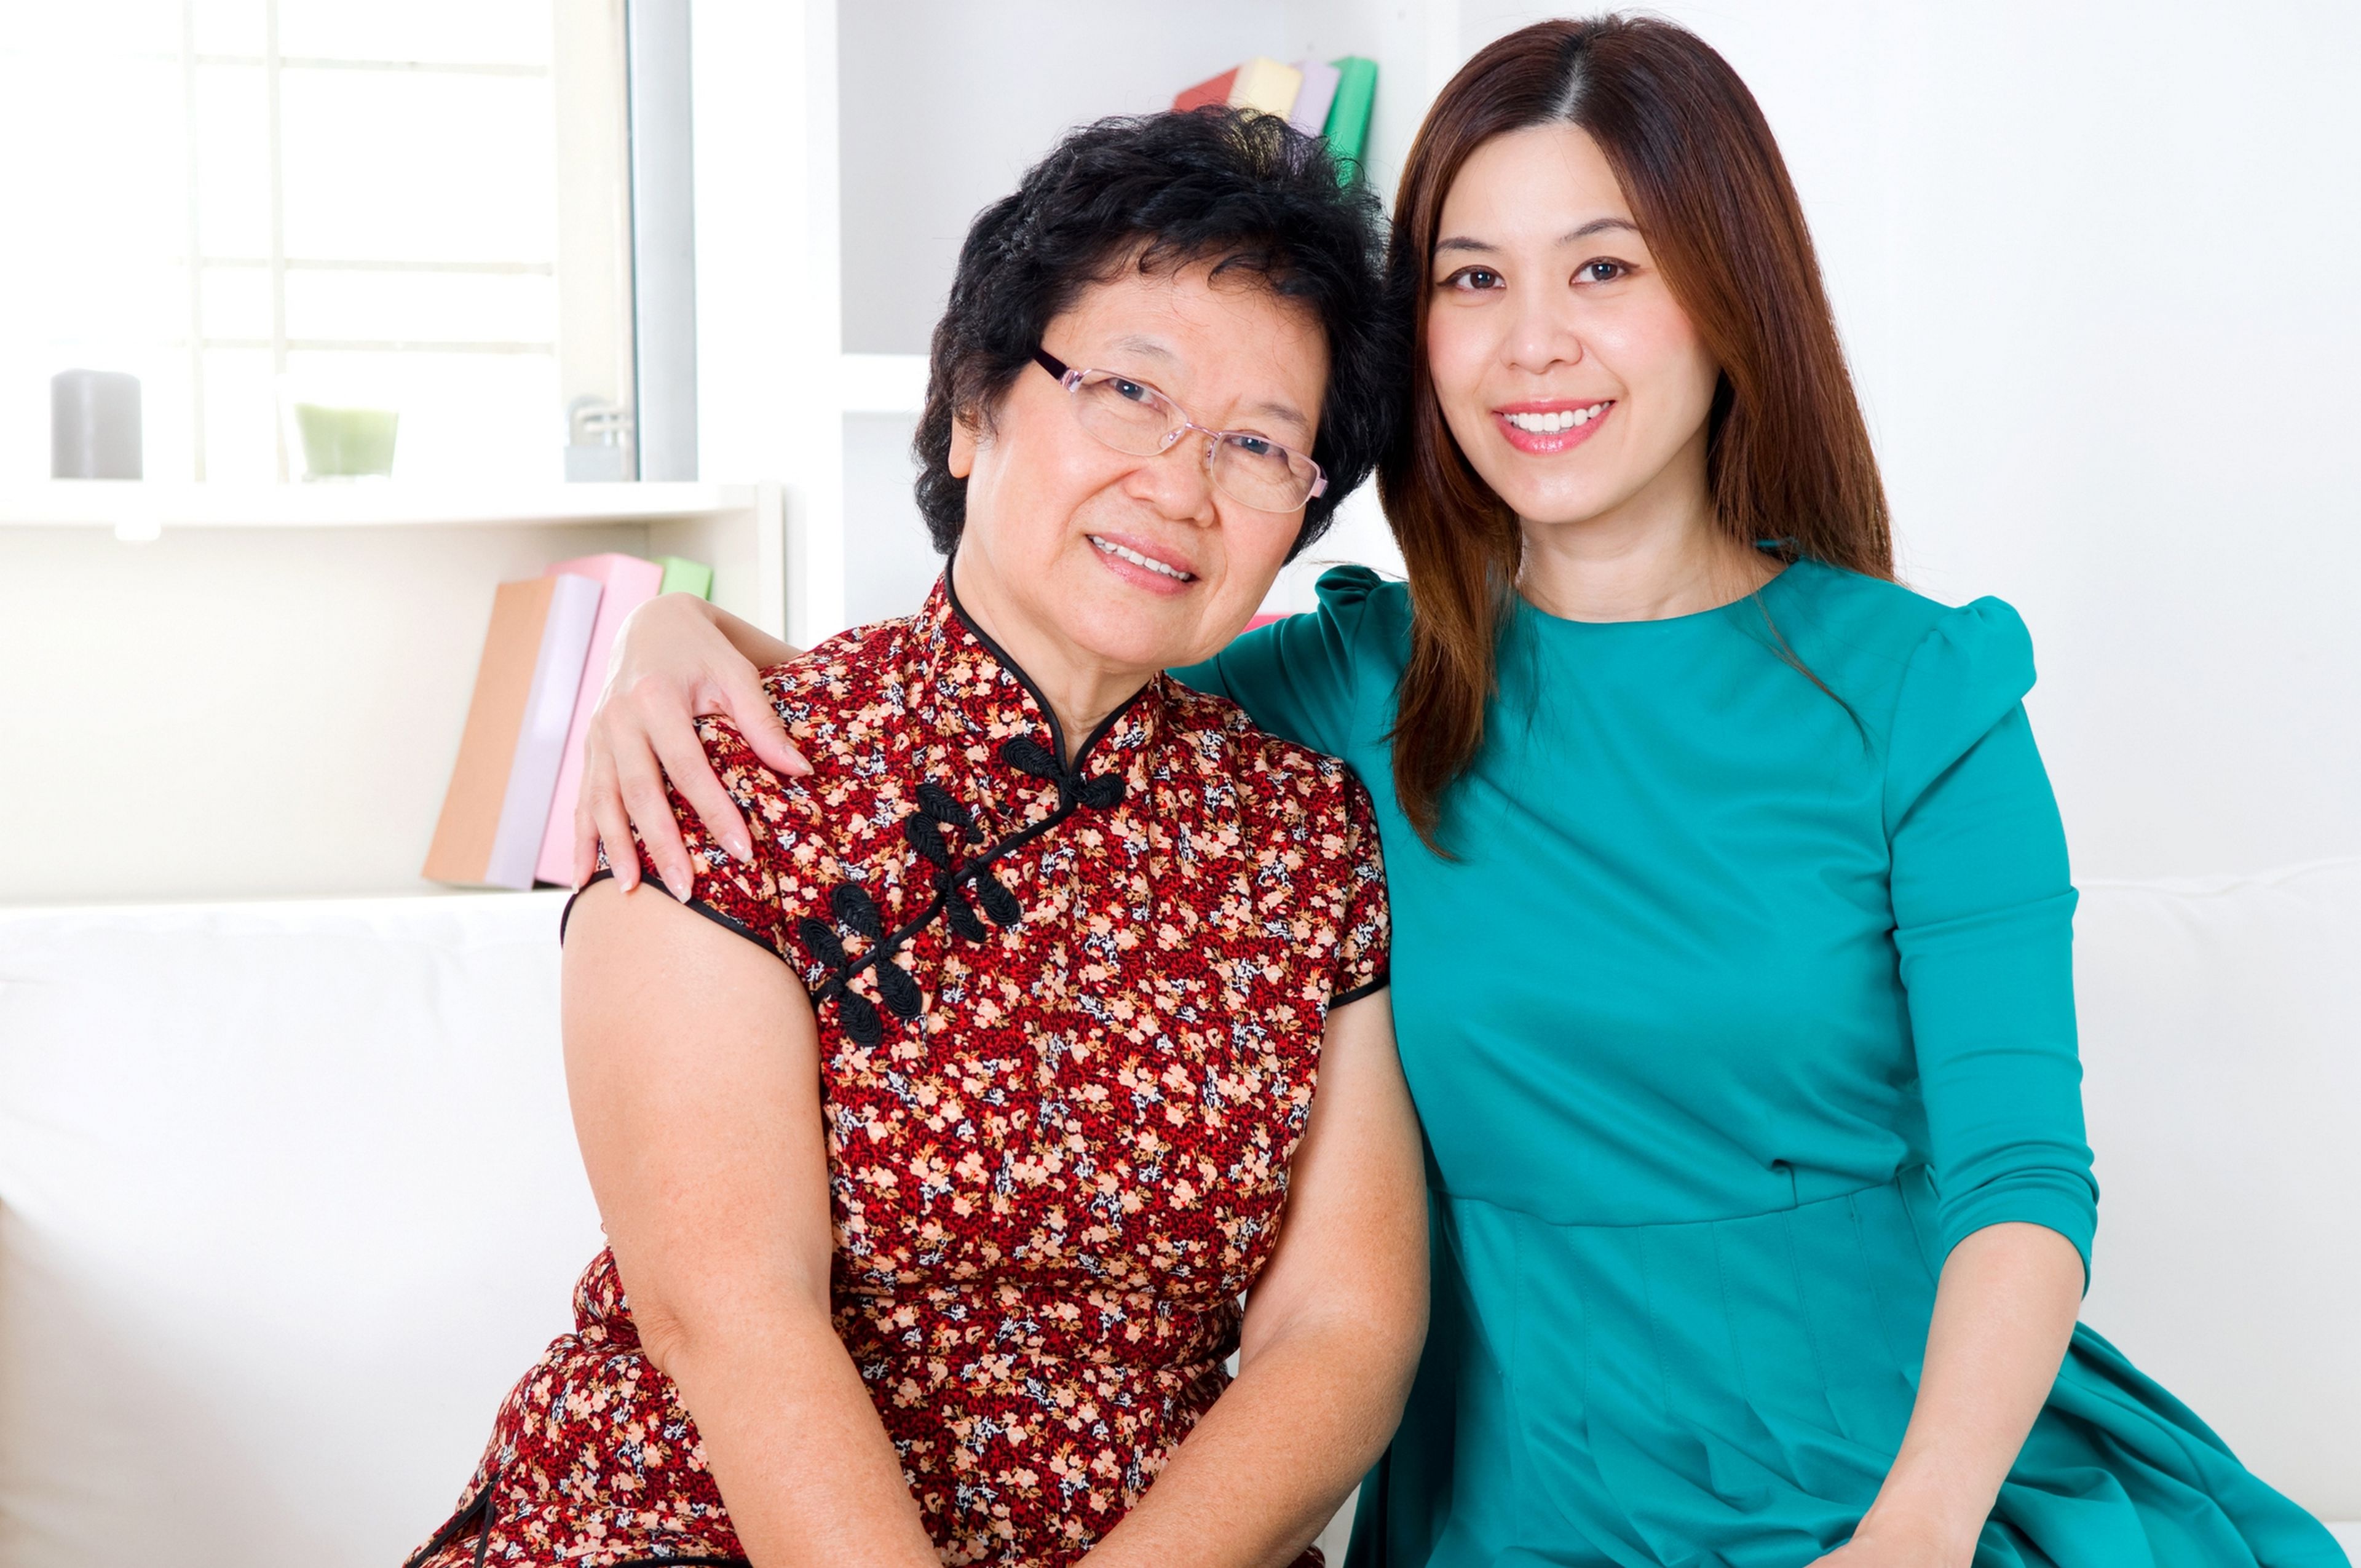 Una mujer china deja su trabajo y firma un contrato indefinido con sus padres como cuidadora, con mejor sueldo